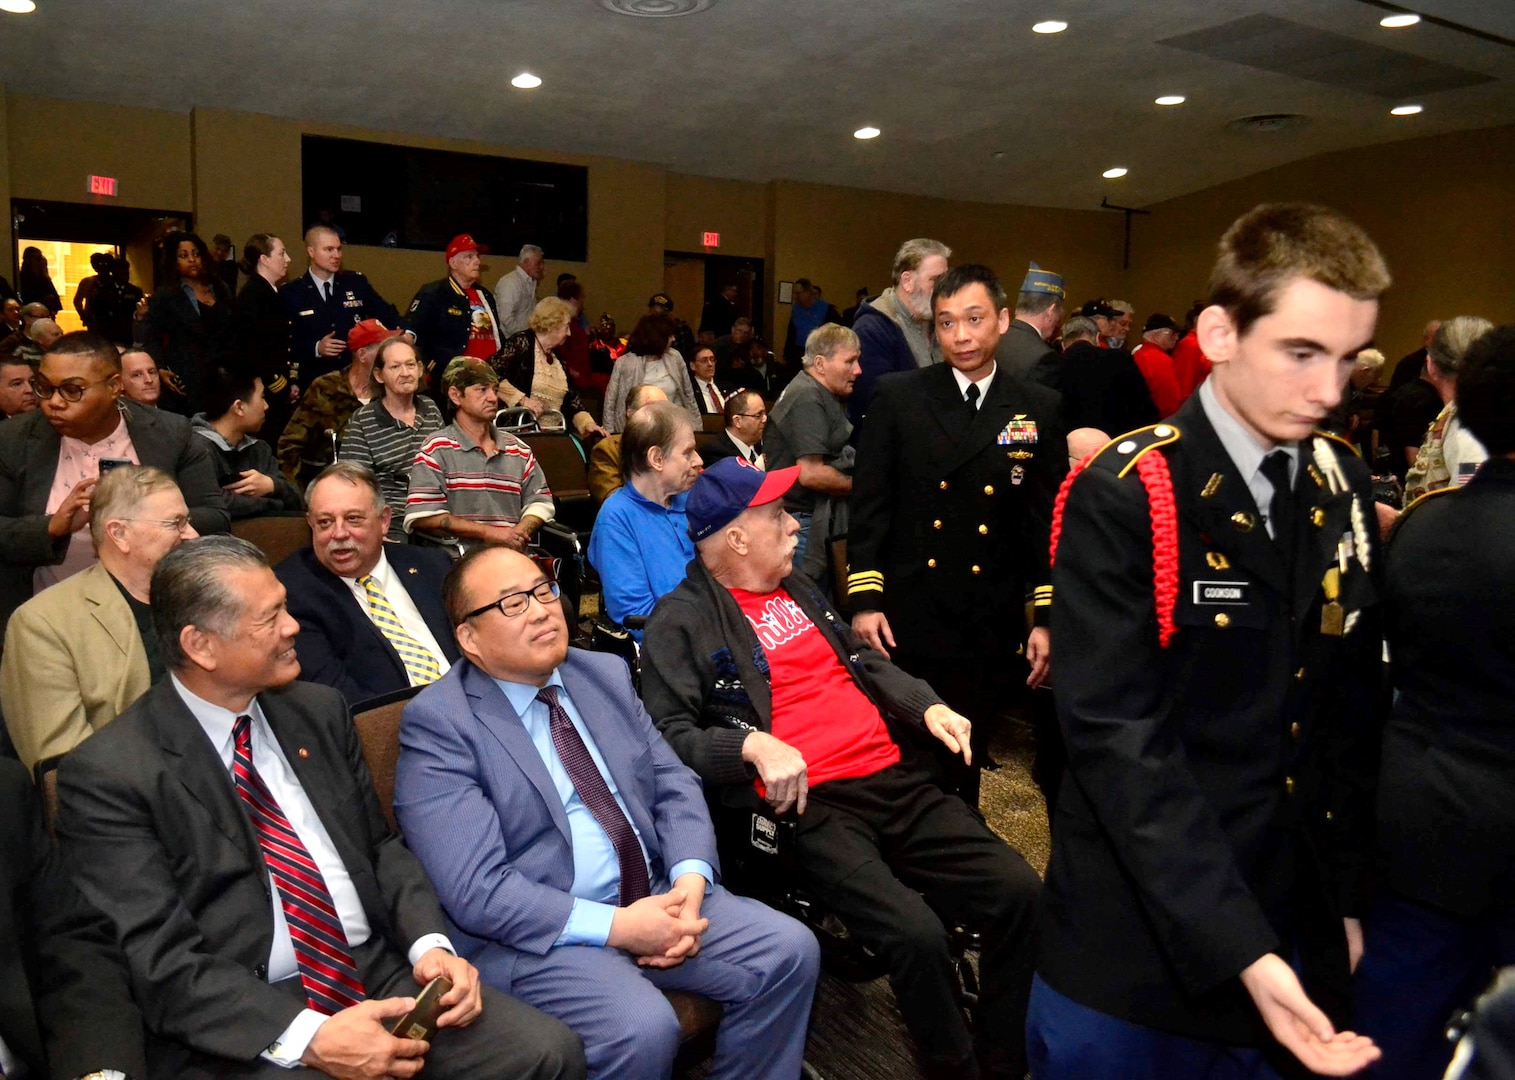 Vietnam War veterans honored in Northeast Philadelphia